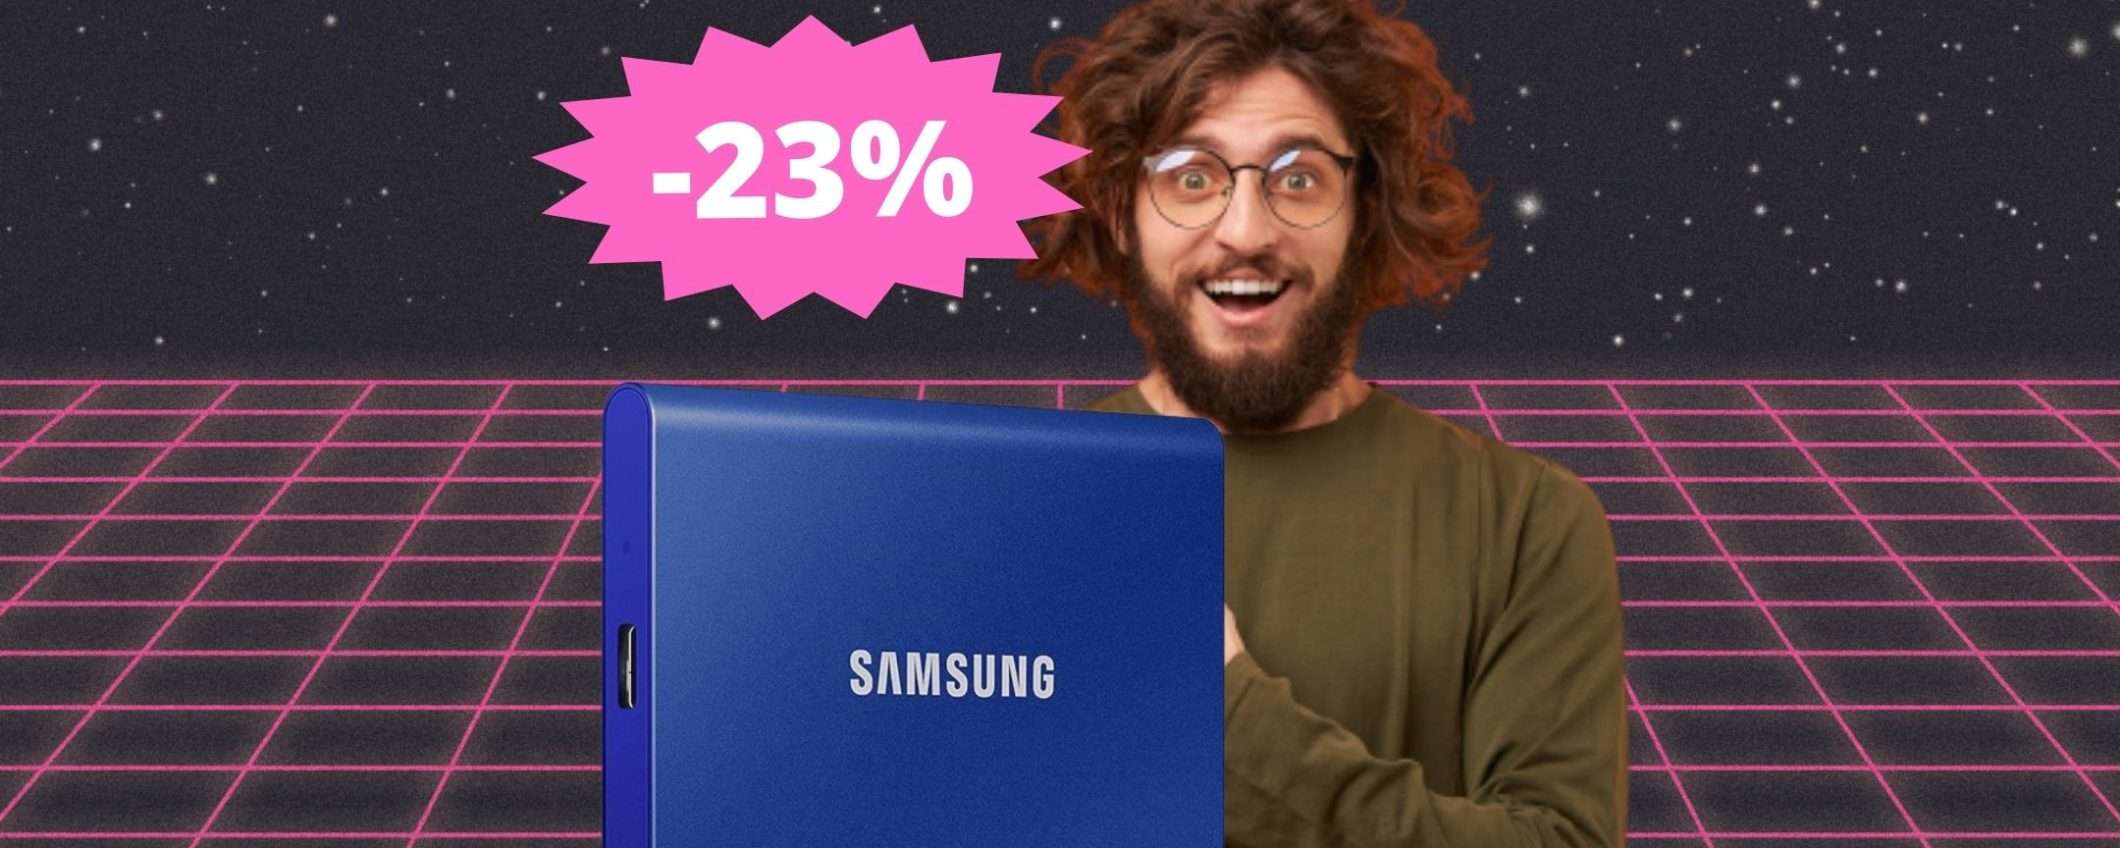 SSD Samsung T7 Portable: prezzo BOMBA su Amazon (-23%)